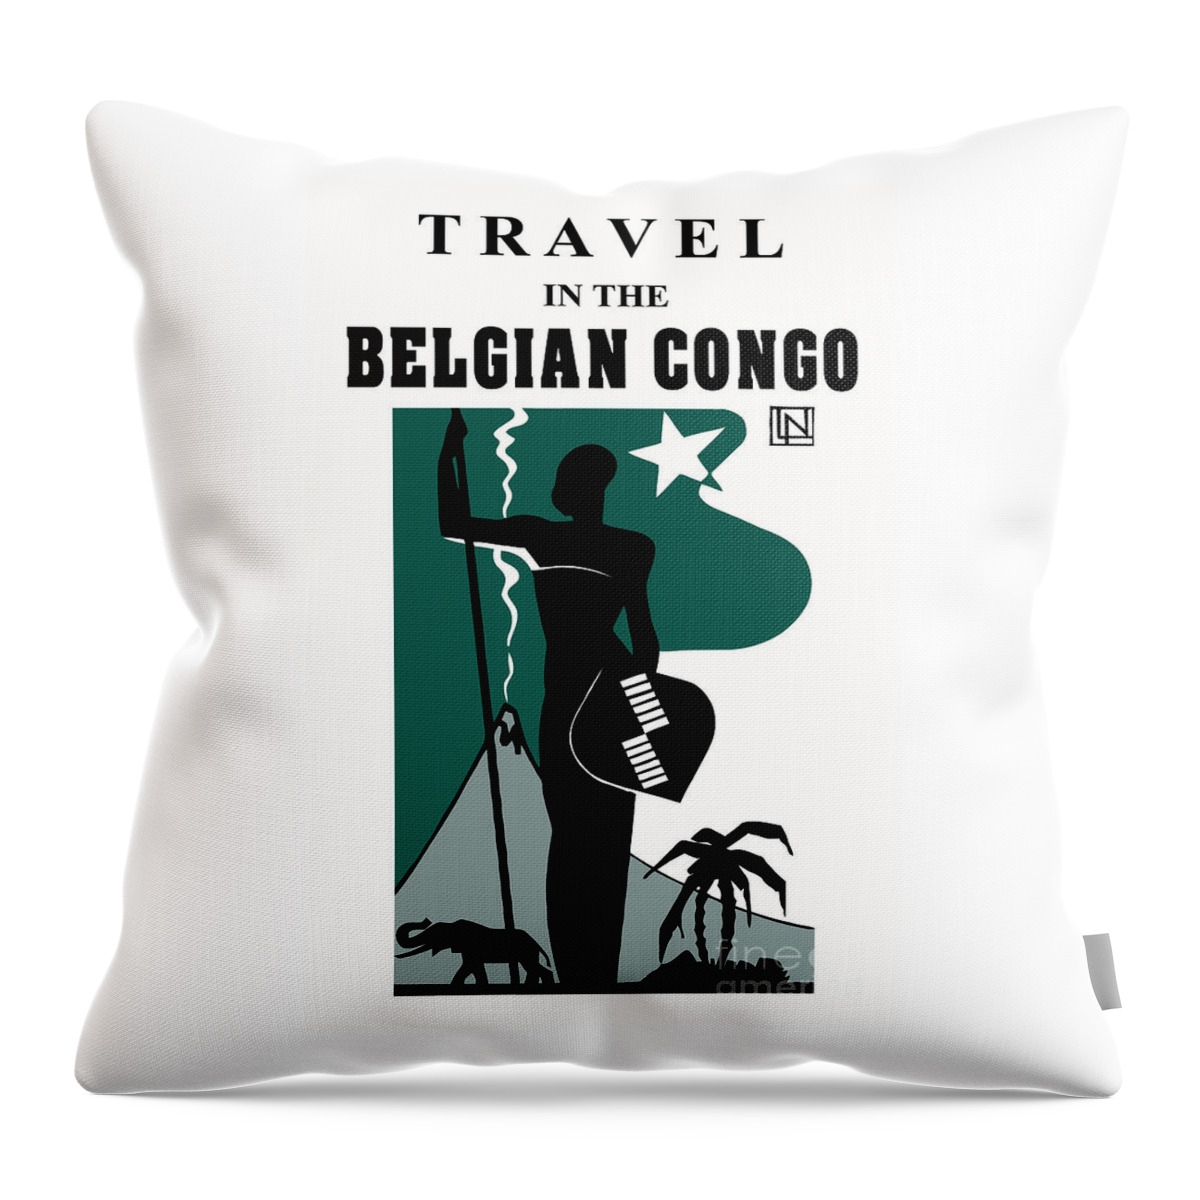  Belgian Throw Pillow featuring the digital art Travel in the Belgian Congo art deco by Heidi De Leeuw